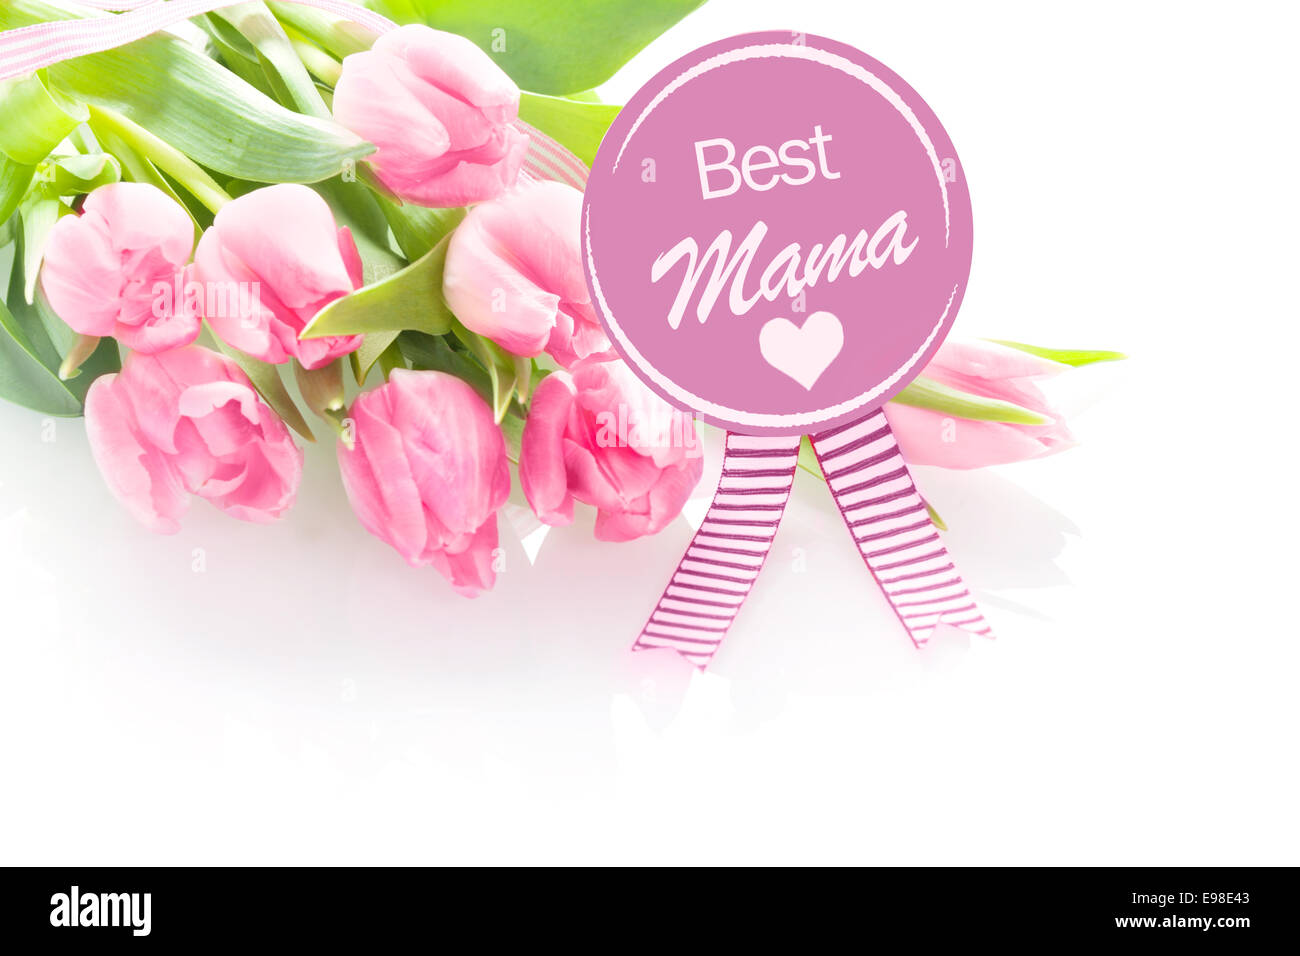 Herzerwärmende Muttertag ein Kind auf eine Runde violette Rosette mit einem Geschenk von einem Bouquet von frischen rosa Tulpen - beste Mama - Grußwort Stockfoto